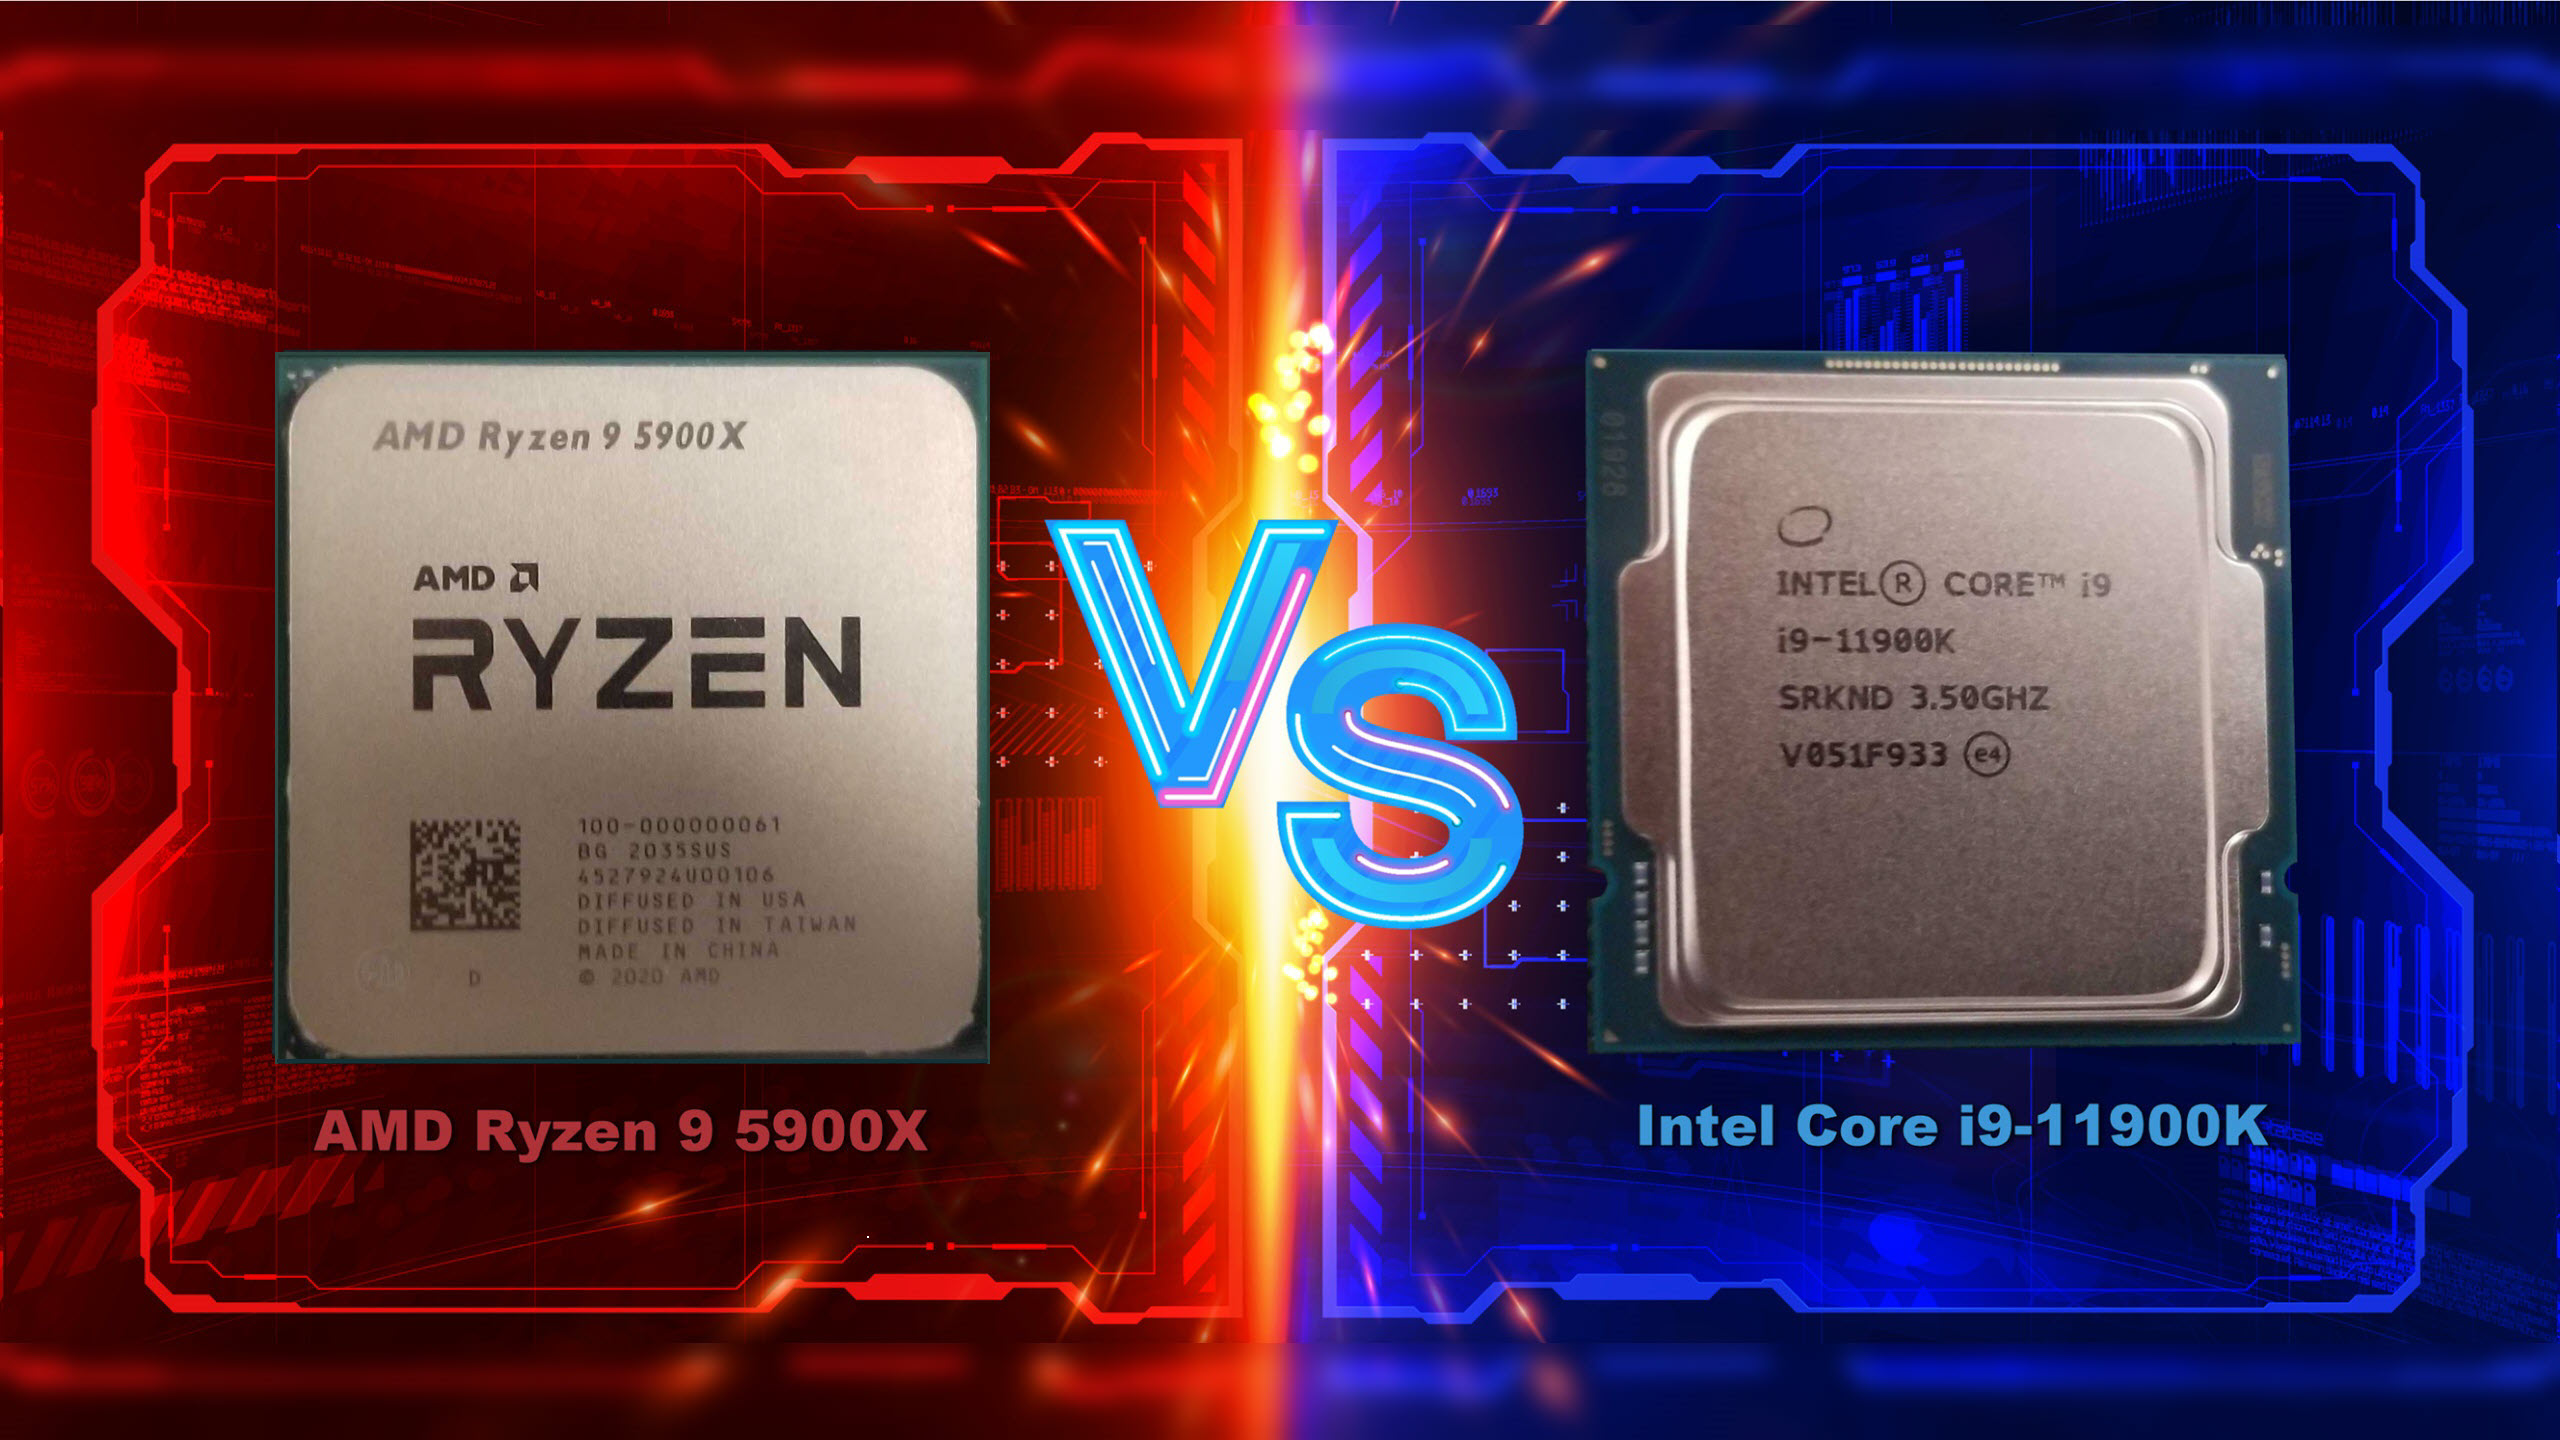 AMD's Ryzen 9 5900X is a best seller on